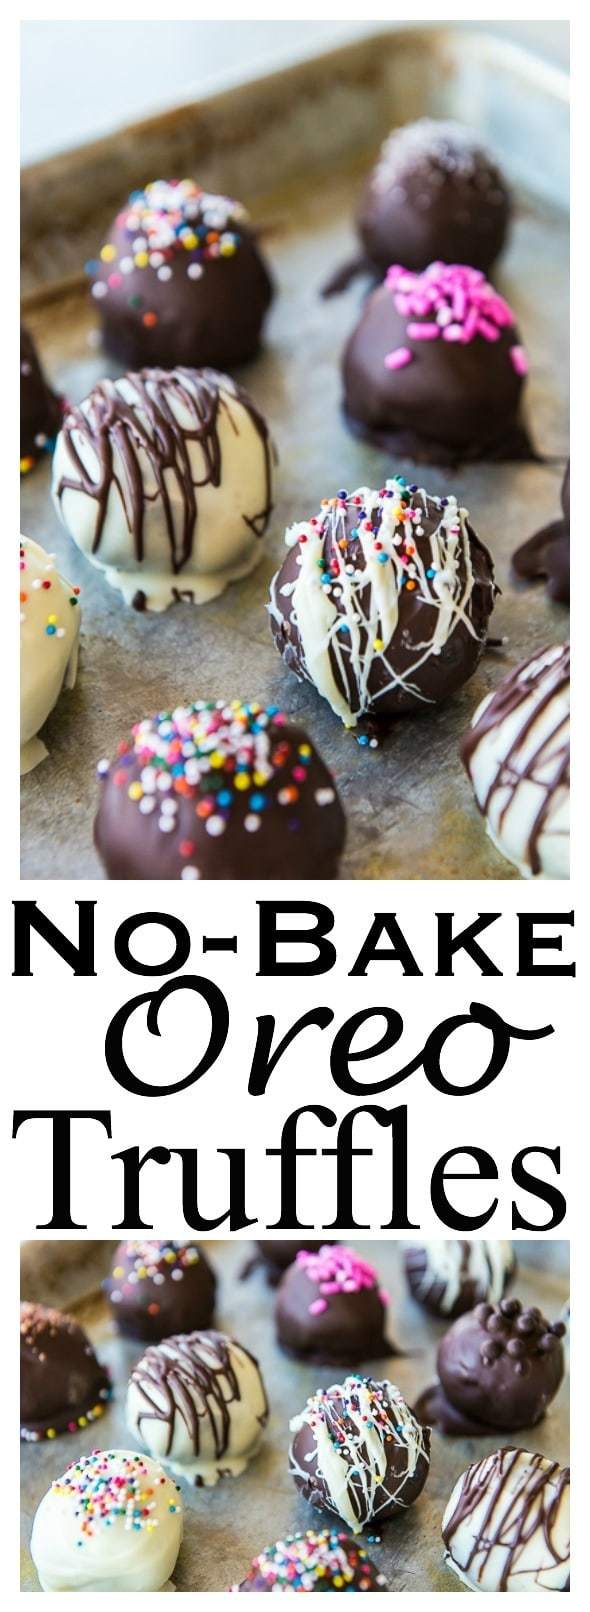 Easy No-bake Oreo Truffles Recipe - Great Food Gift